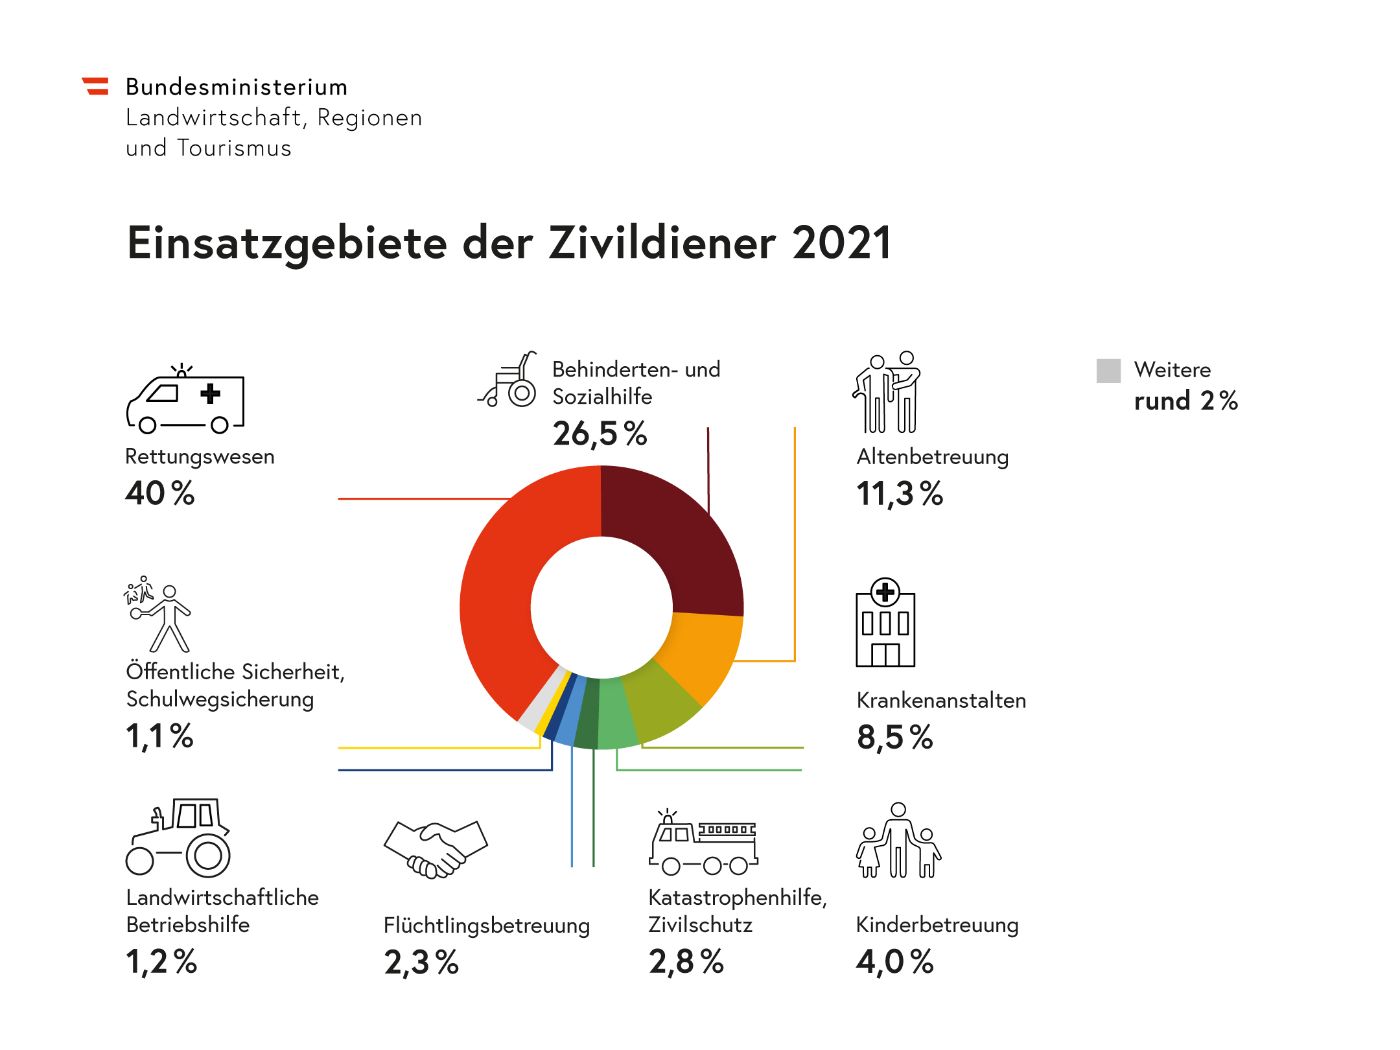 Die Grafik zeigt, wie viele Zivildiener im Jahr 2021 aufgeschlüsselt nach Einsatzgebieten zugewiesen wurden.